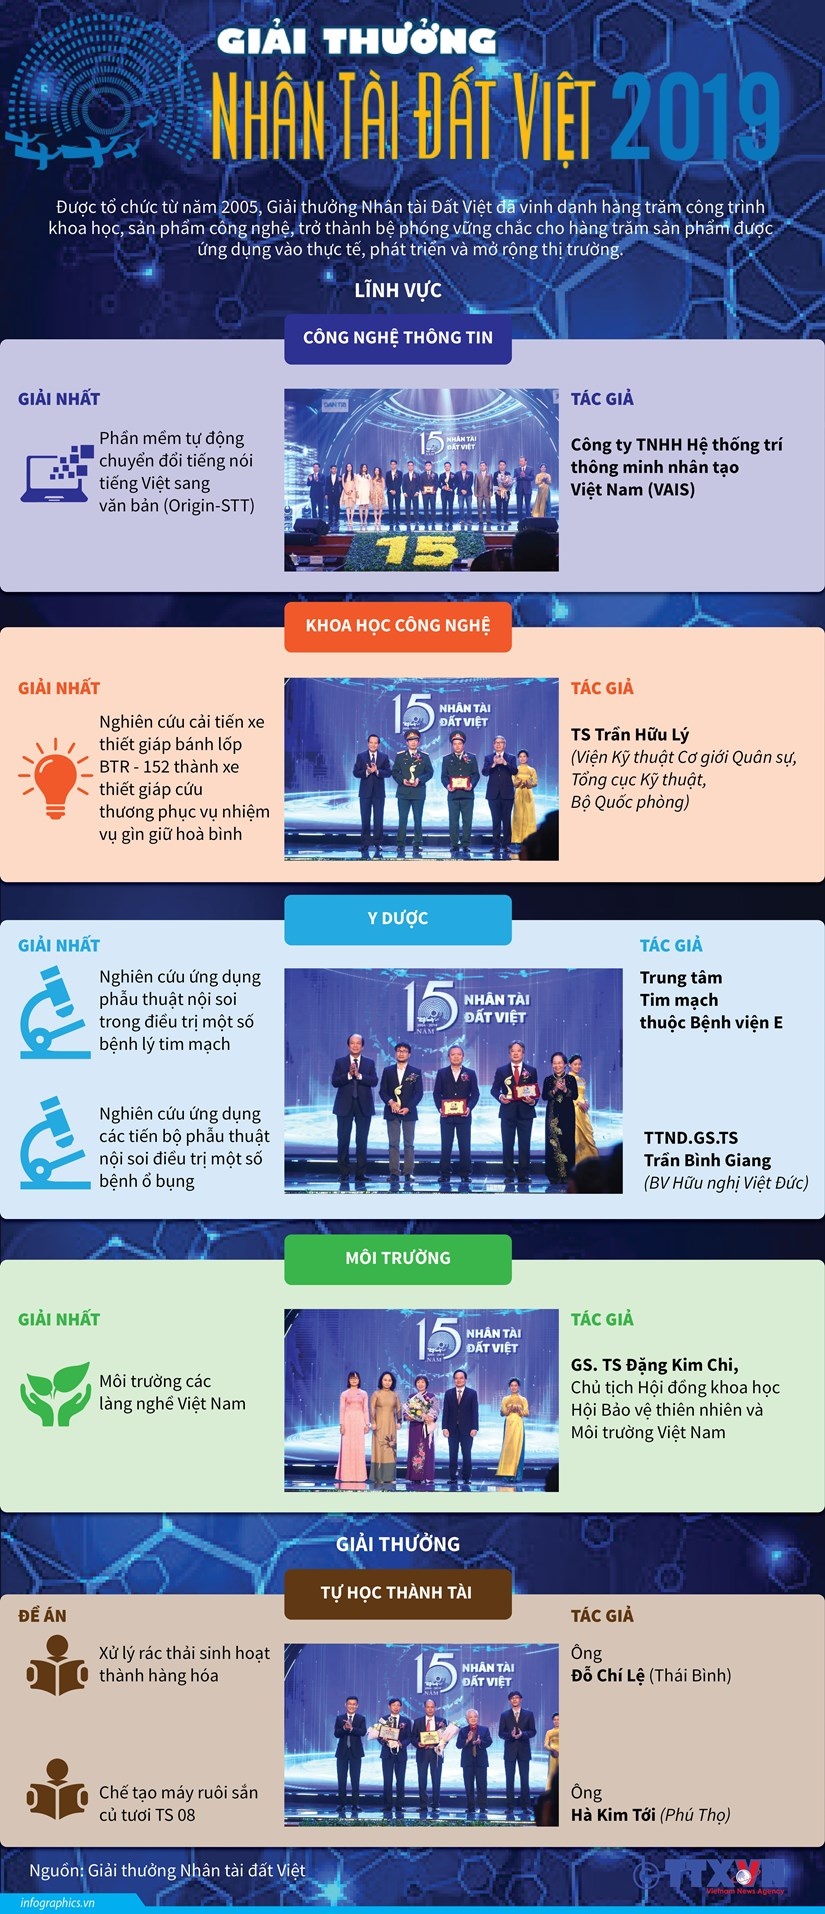 Chi tiết giải thưởng Nhân tài Đất Việt năm 2019